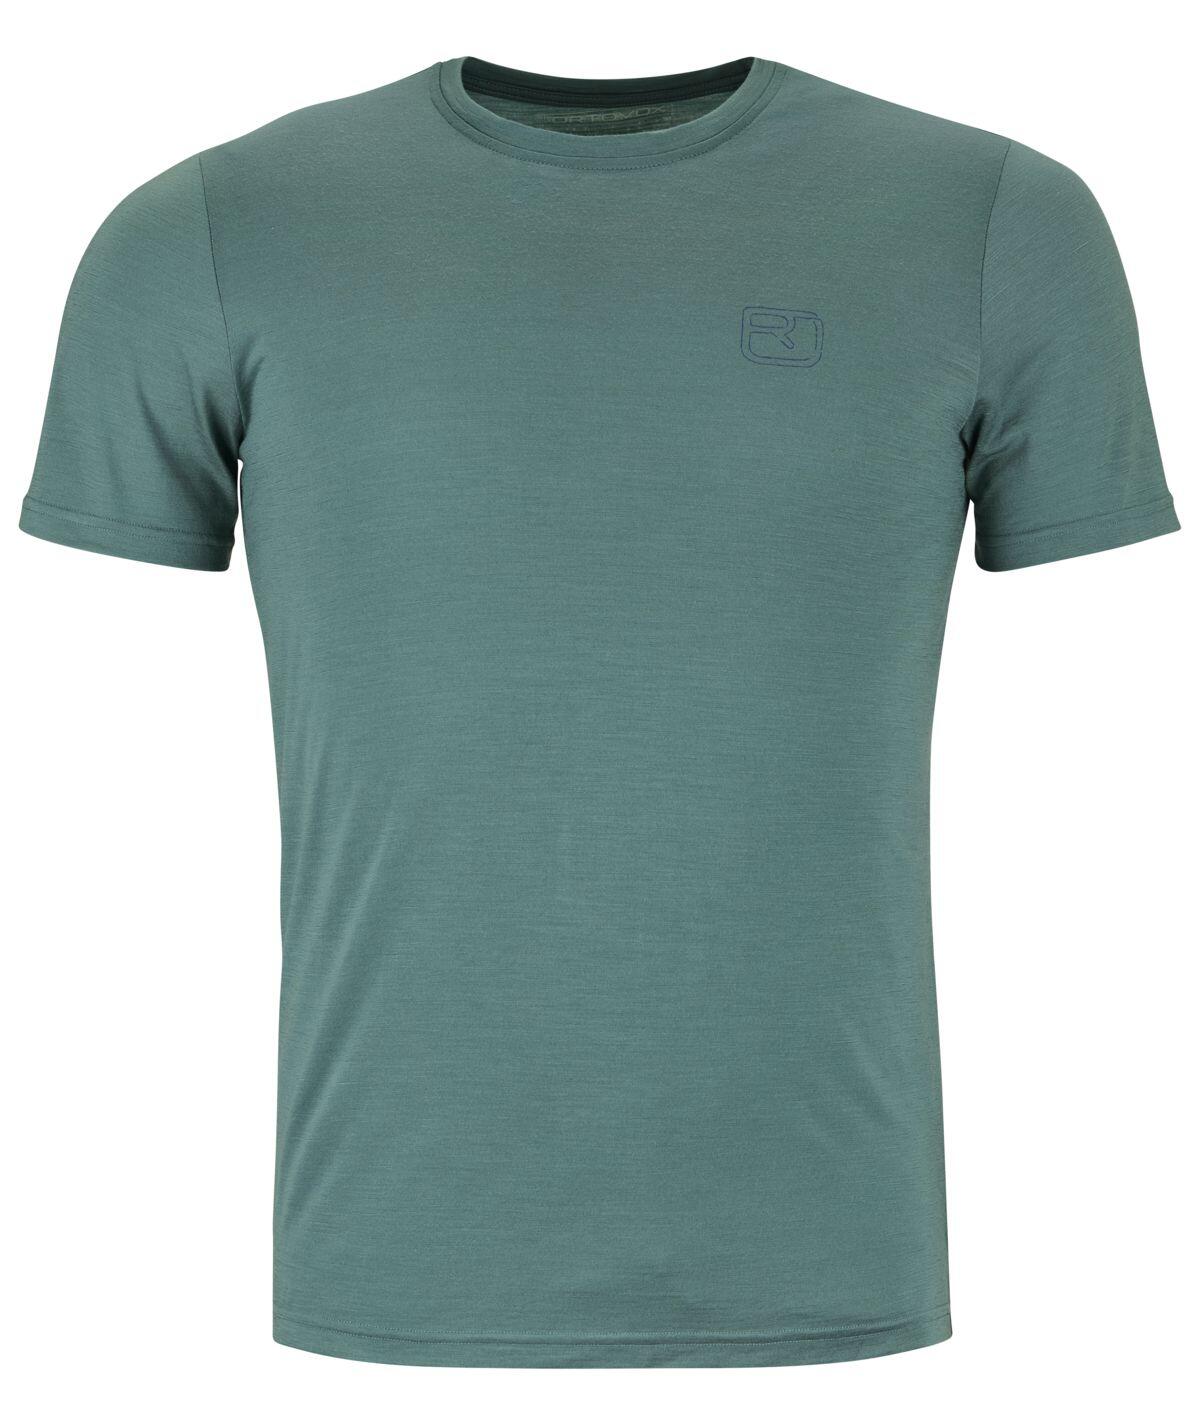 Ortovox 150 Cool Ballpen T-shirt Men's Barva: arctic grey, Velikost: M